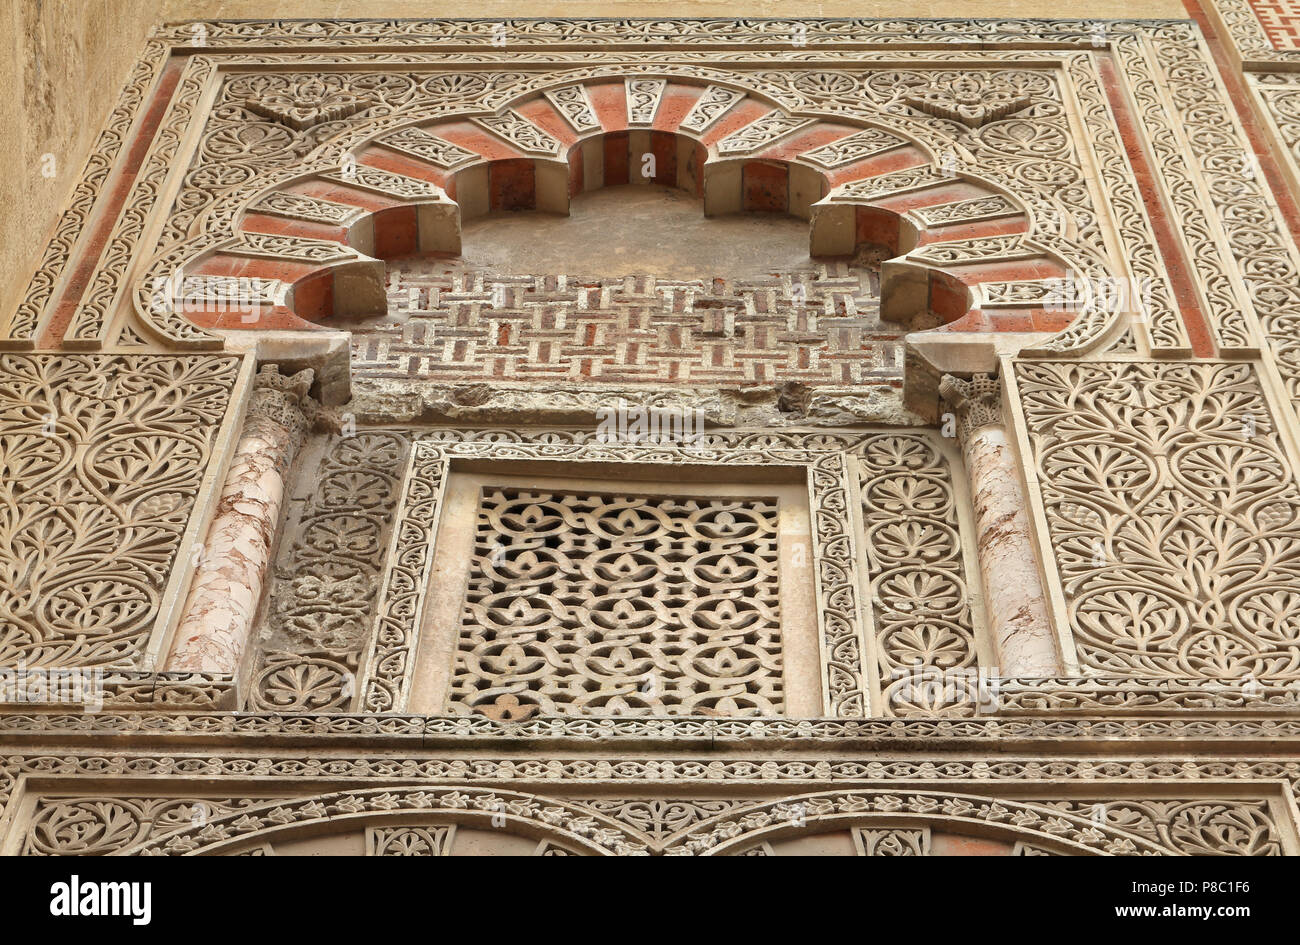 Cordoba, Spain. The Great Mosque (currently Catholic cathedral). UNESCO World Heritage Site. Mashrabiya window with stone latticework. Beautiful art. Stock Photo